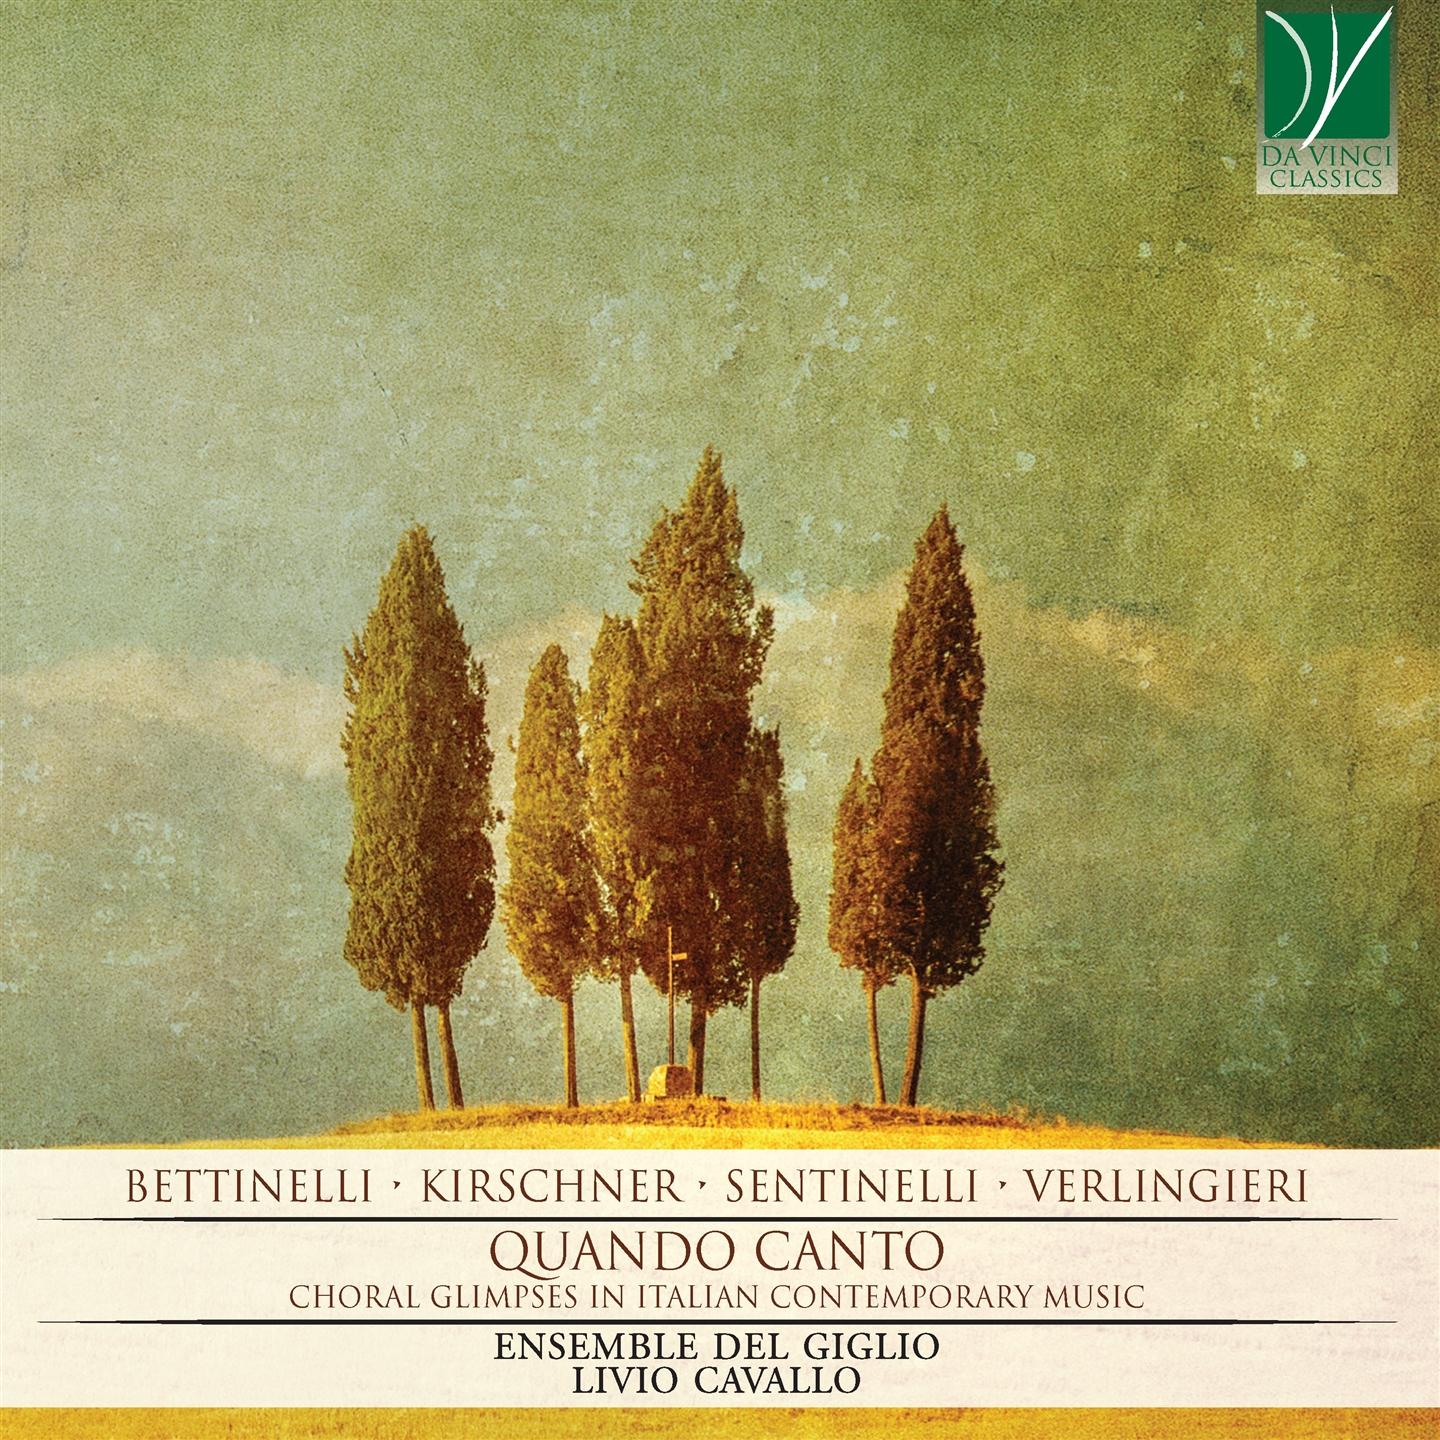 QUANDO CANTO - CHORAL GLIMPSES IN ITALIAN CONTEMPORARY MUSIC